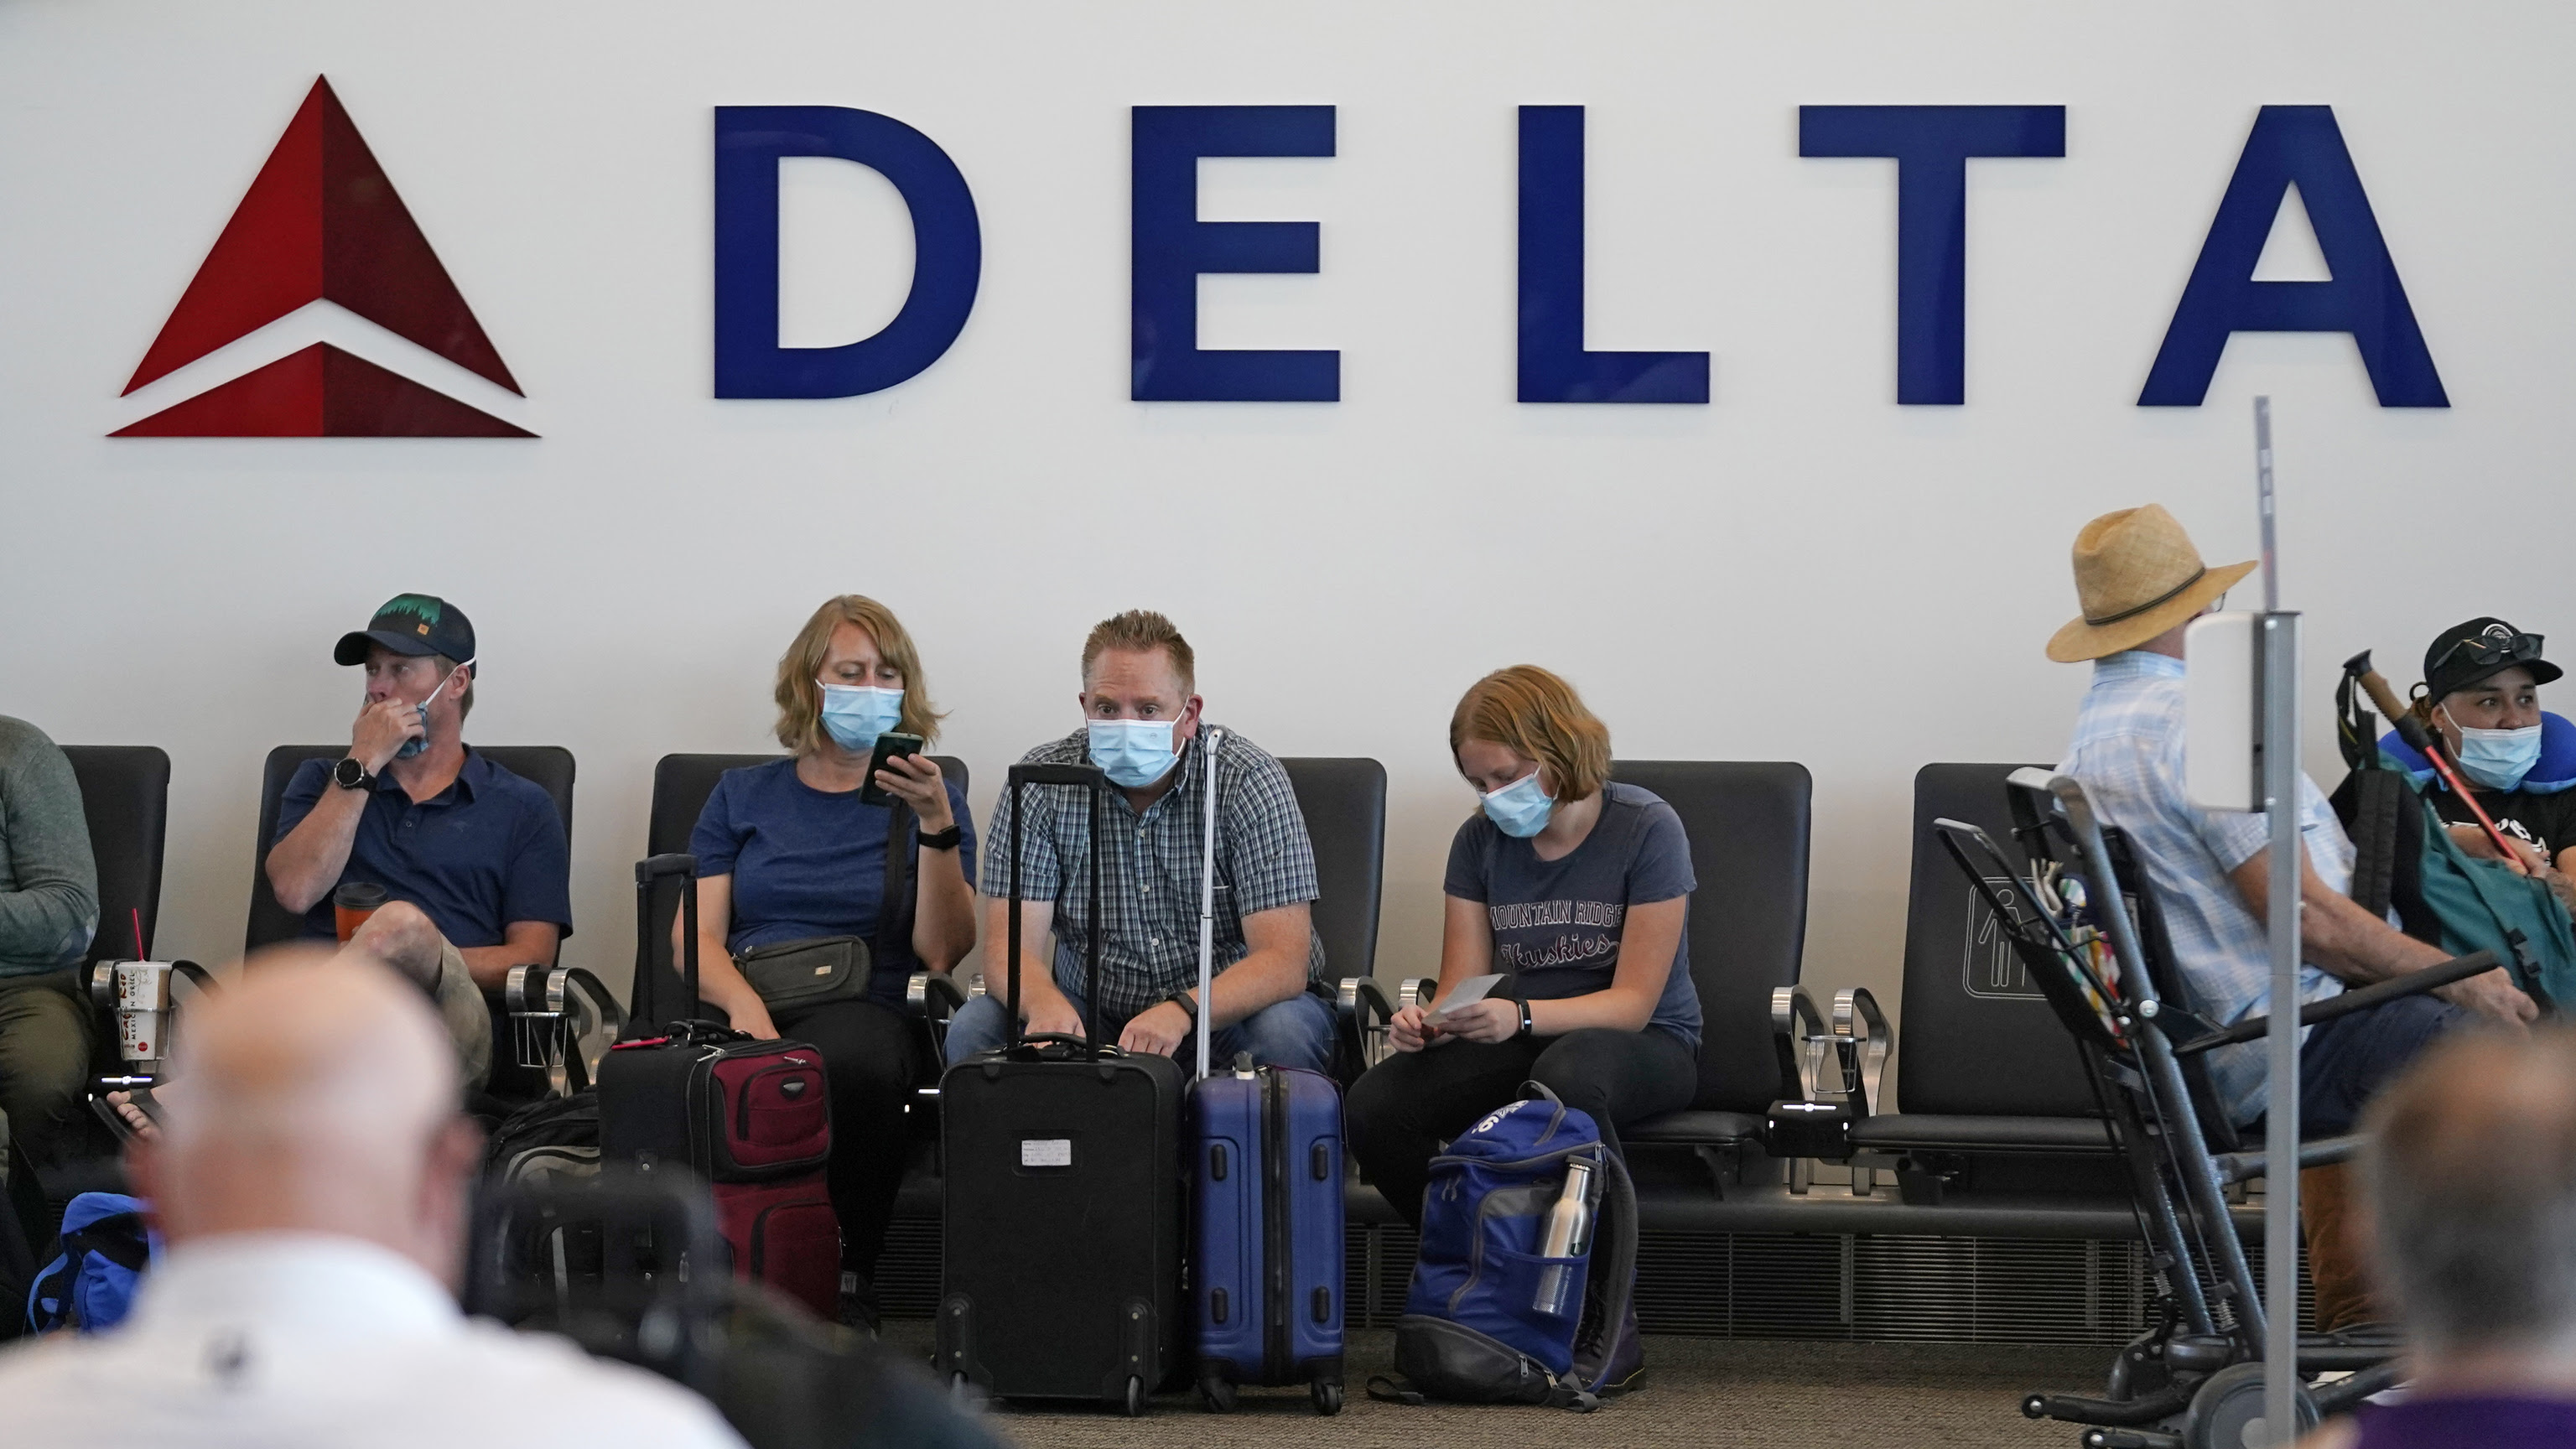 La aerolínea Delta penalizará con 200 dólares mensuales a los empleados que no se vacunen